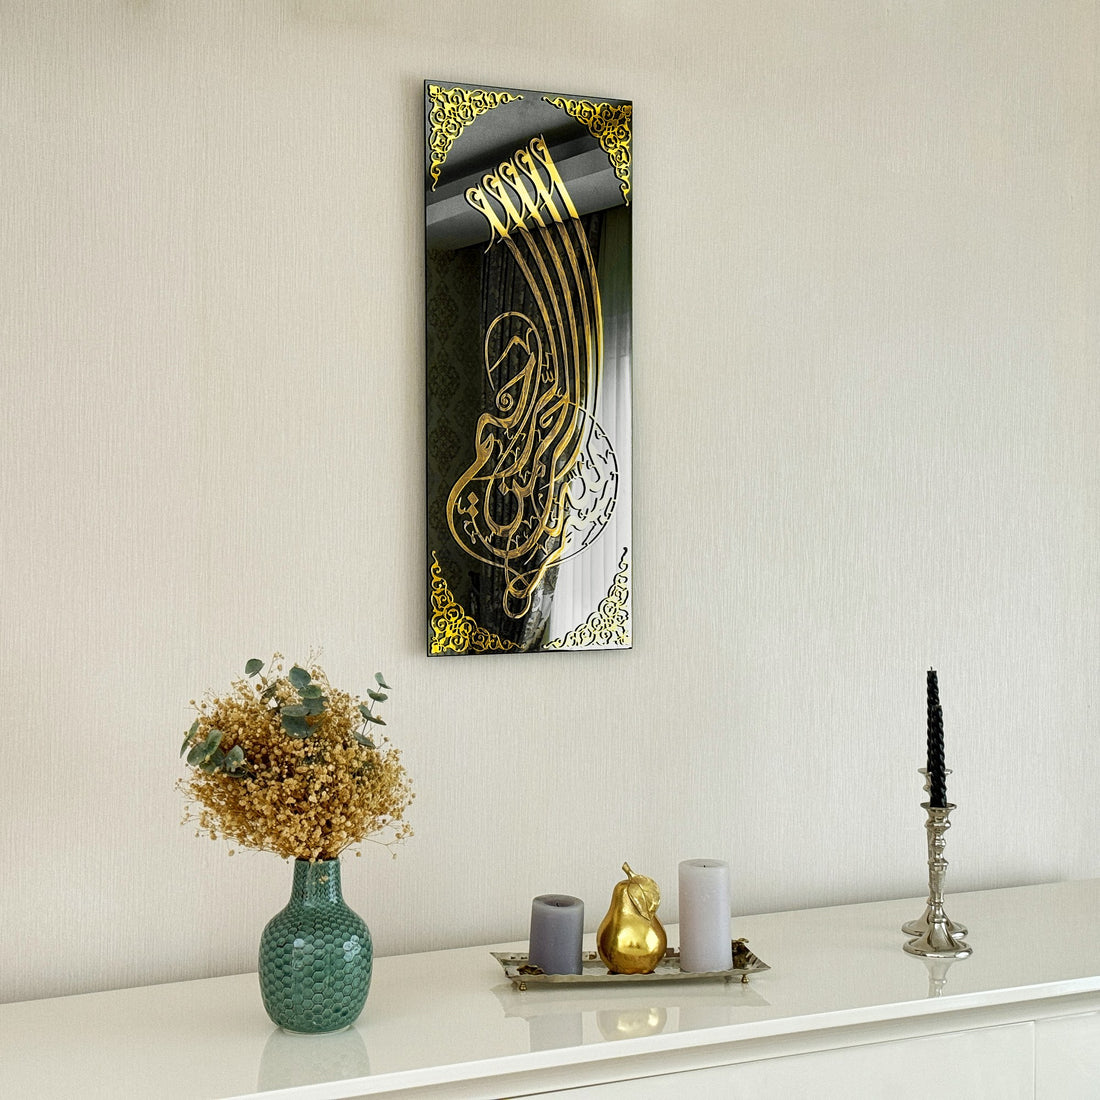 islamic-glass-basmala-vertical-glass-islamic-wall-art-islamic-calligraphy-cultural-decor-piece-shukranislamicarts